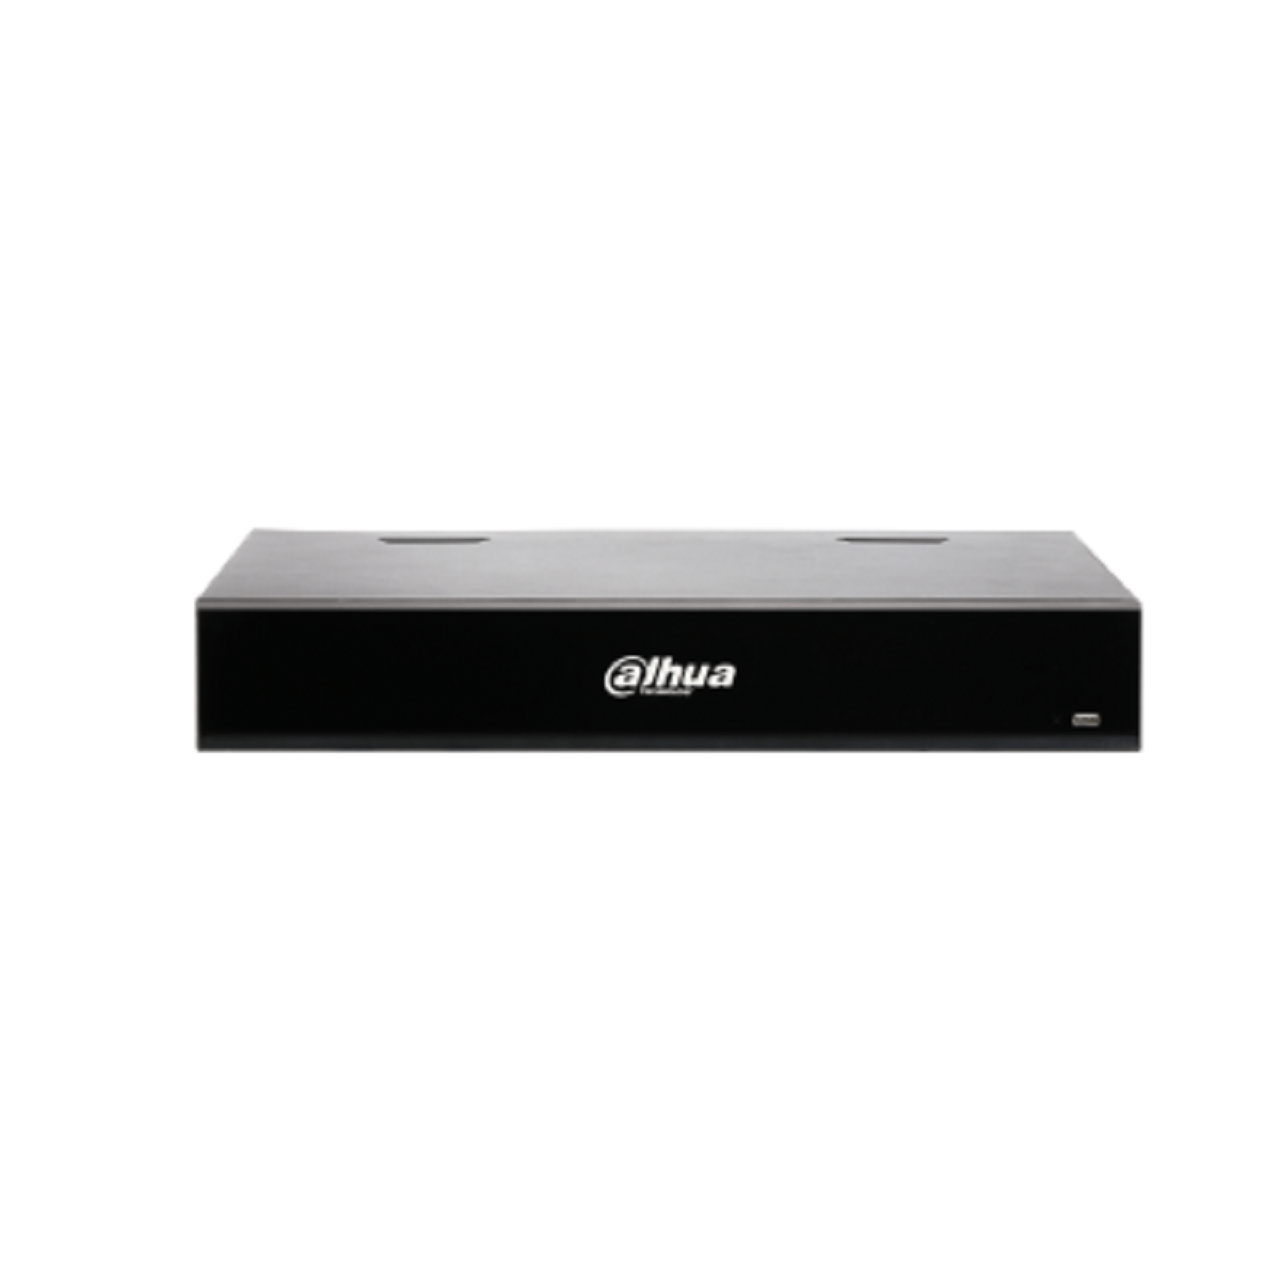 Dahua NVR5216-16P-I/L 16 Kanal 1U 2HDDs 16 PoE WizMind Netzwerk Videorekorder